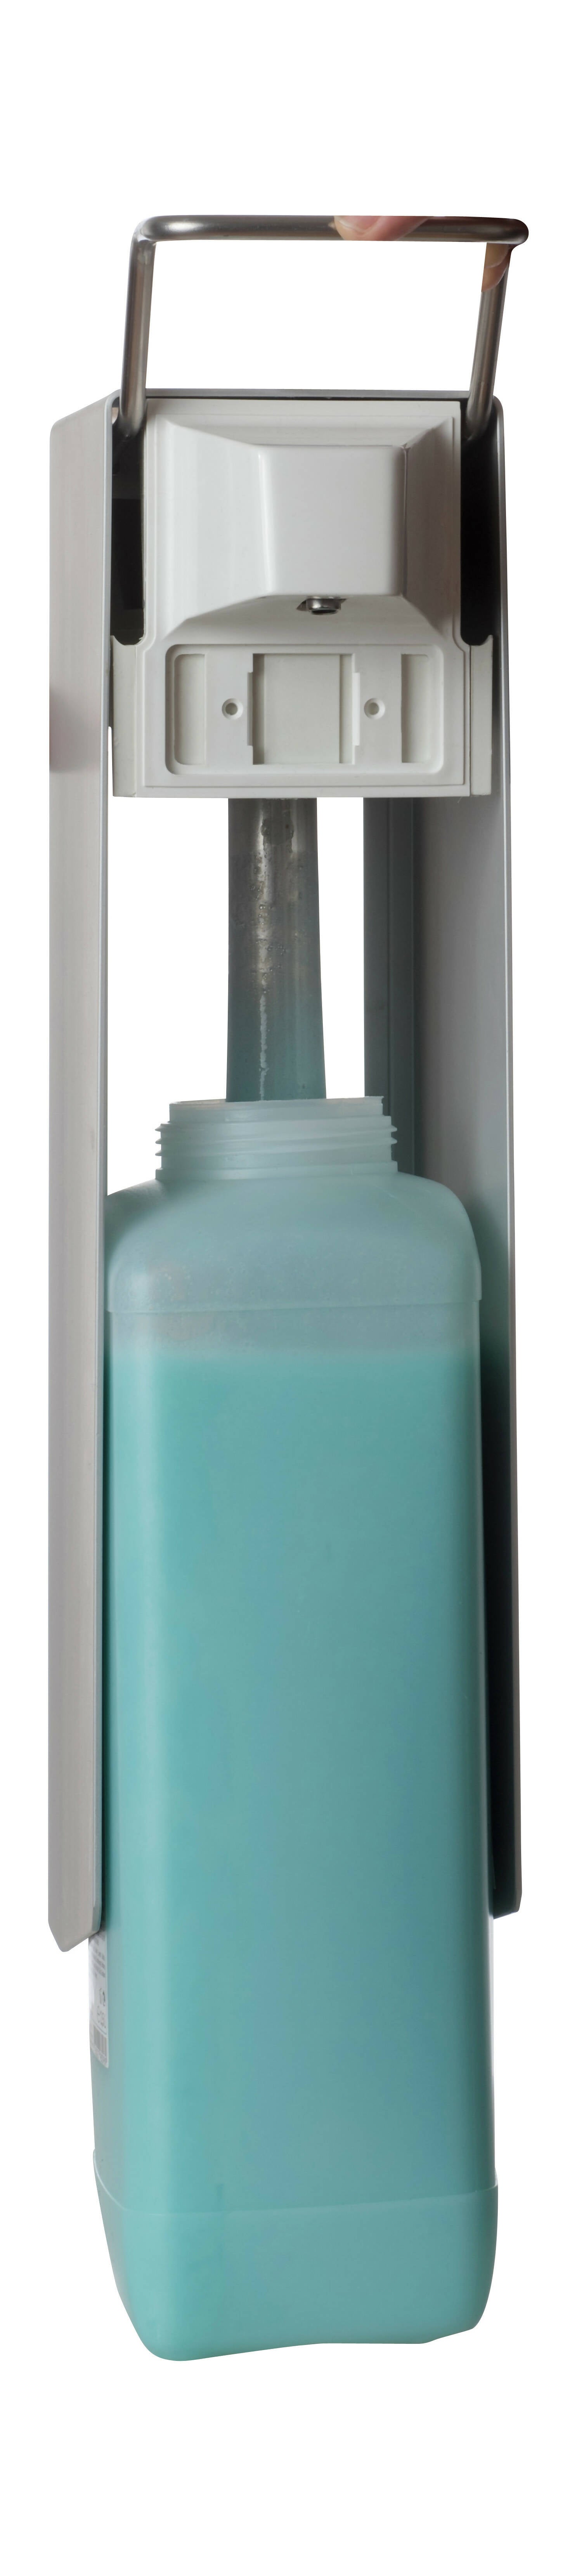 SORIFA – Robuster, ergonomischer, abschließbarer Wandspender aus Metall für 2,5L-Flasche der Marke SORIFA – Für Gele und Flüssigseifen.